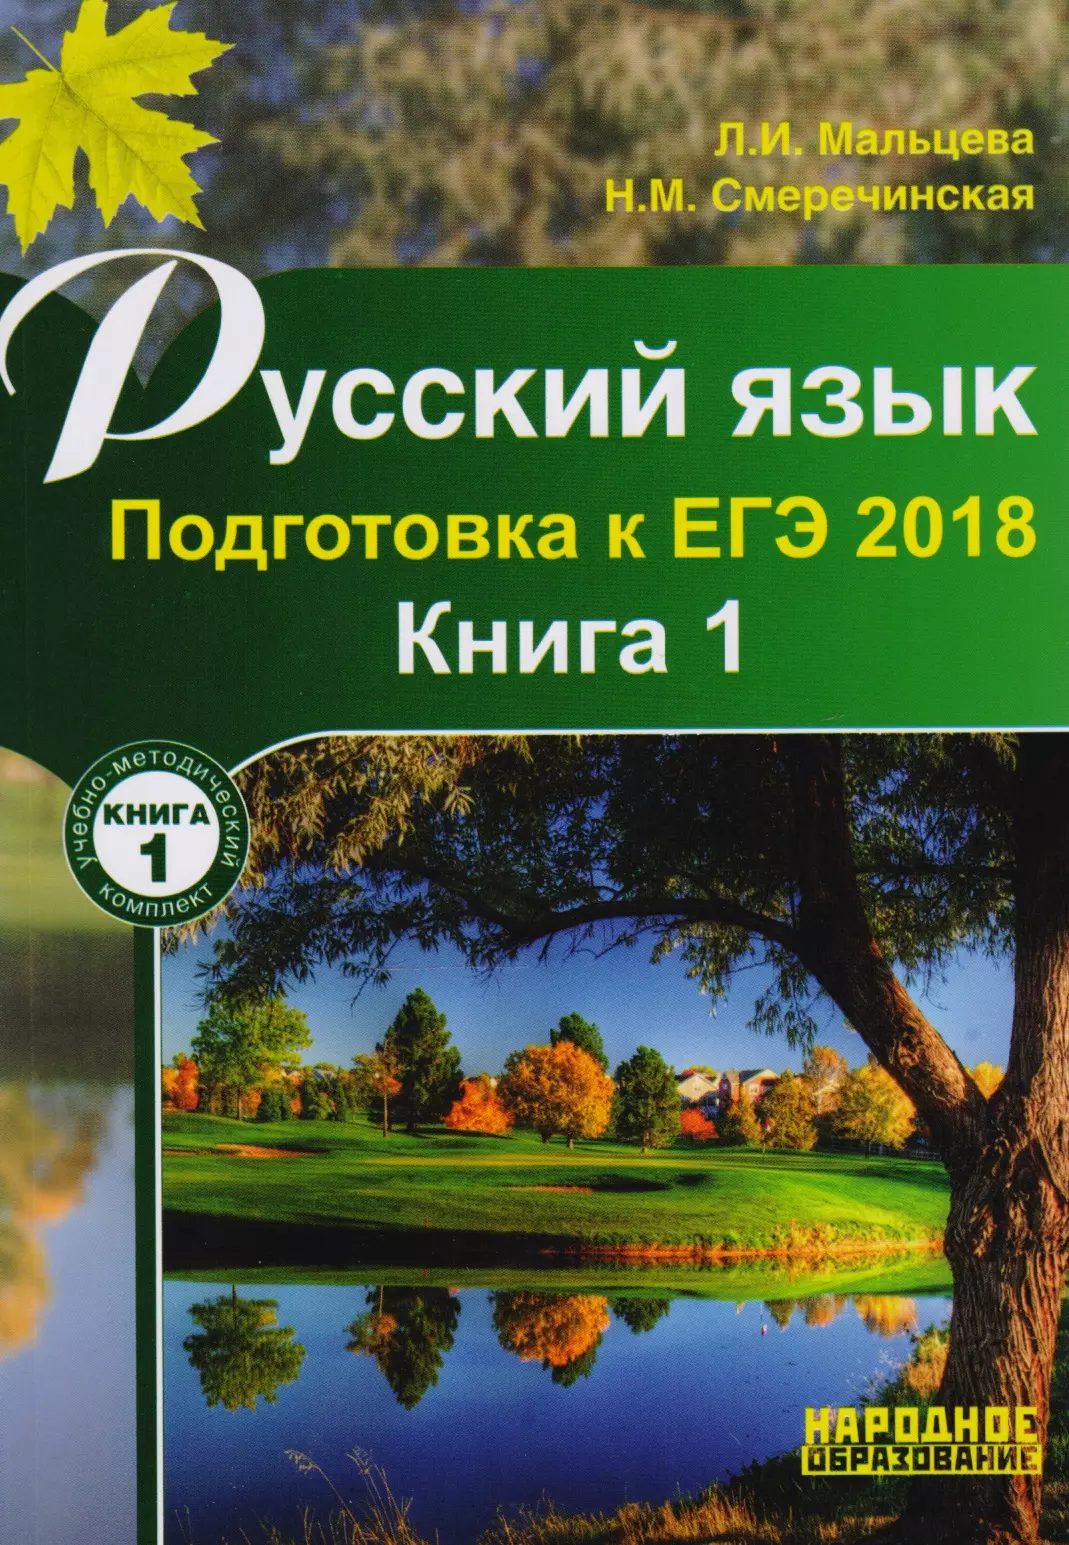 Русский язык Подготовка ЕГЭ Книга 1 (м) Мальцева